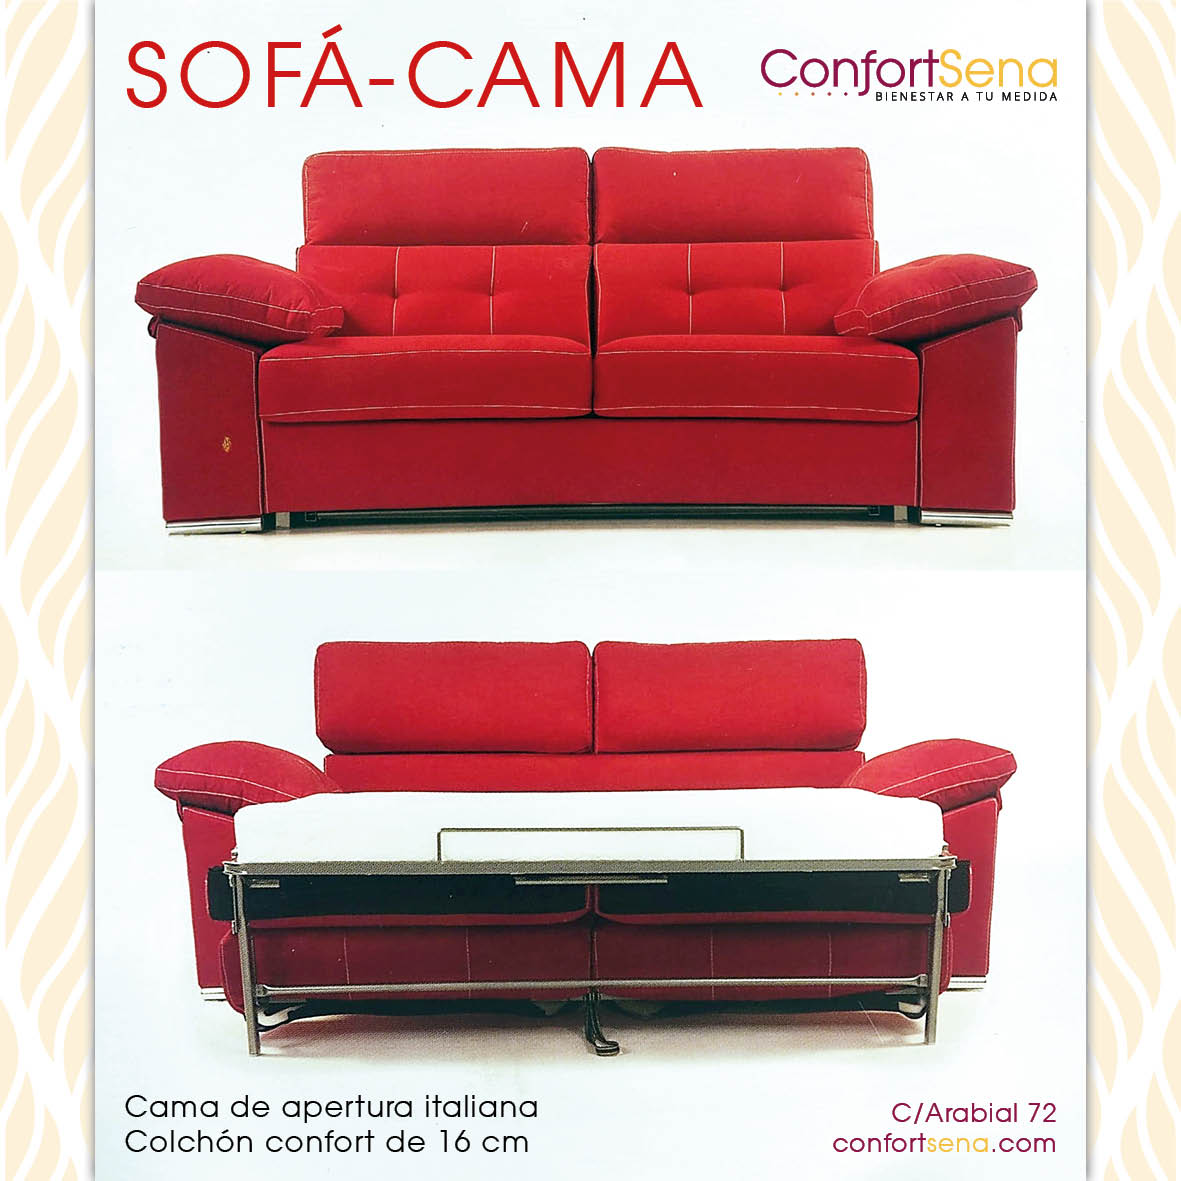 sofa cama granada chaise longue confortsena2